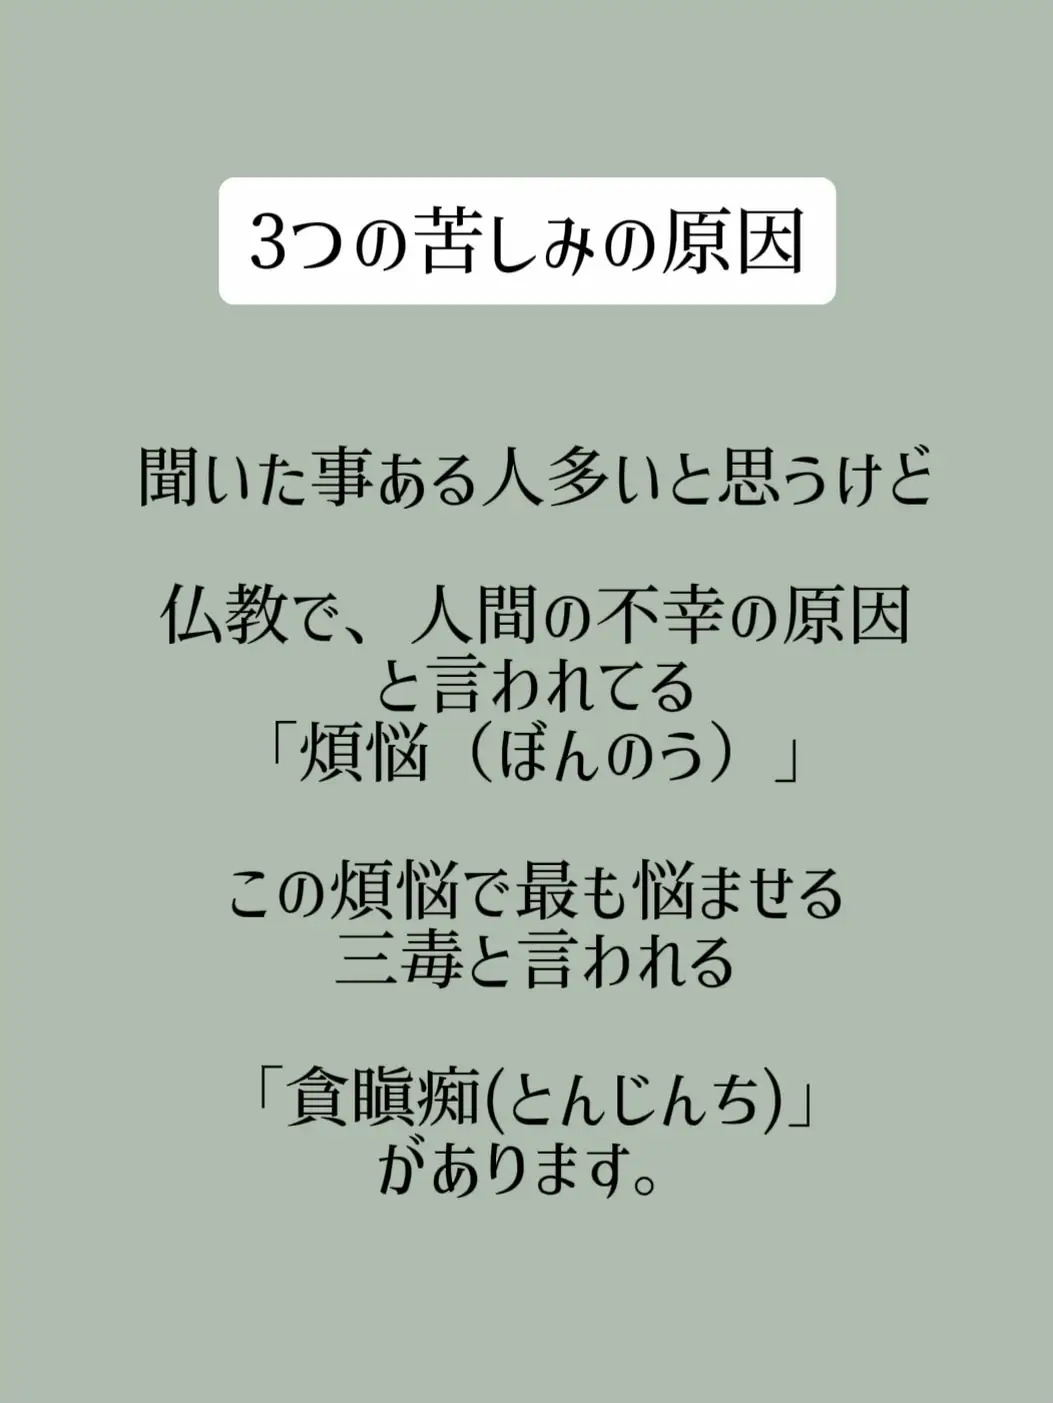 痢 多田多佳子 肉便器 tumblr 16 エロコミックハンター